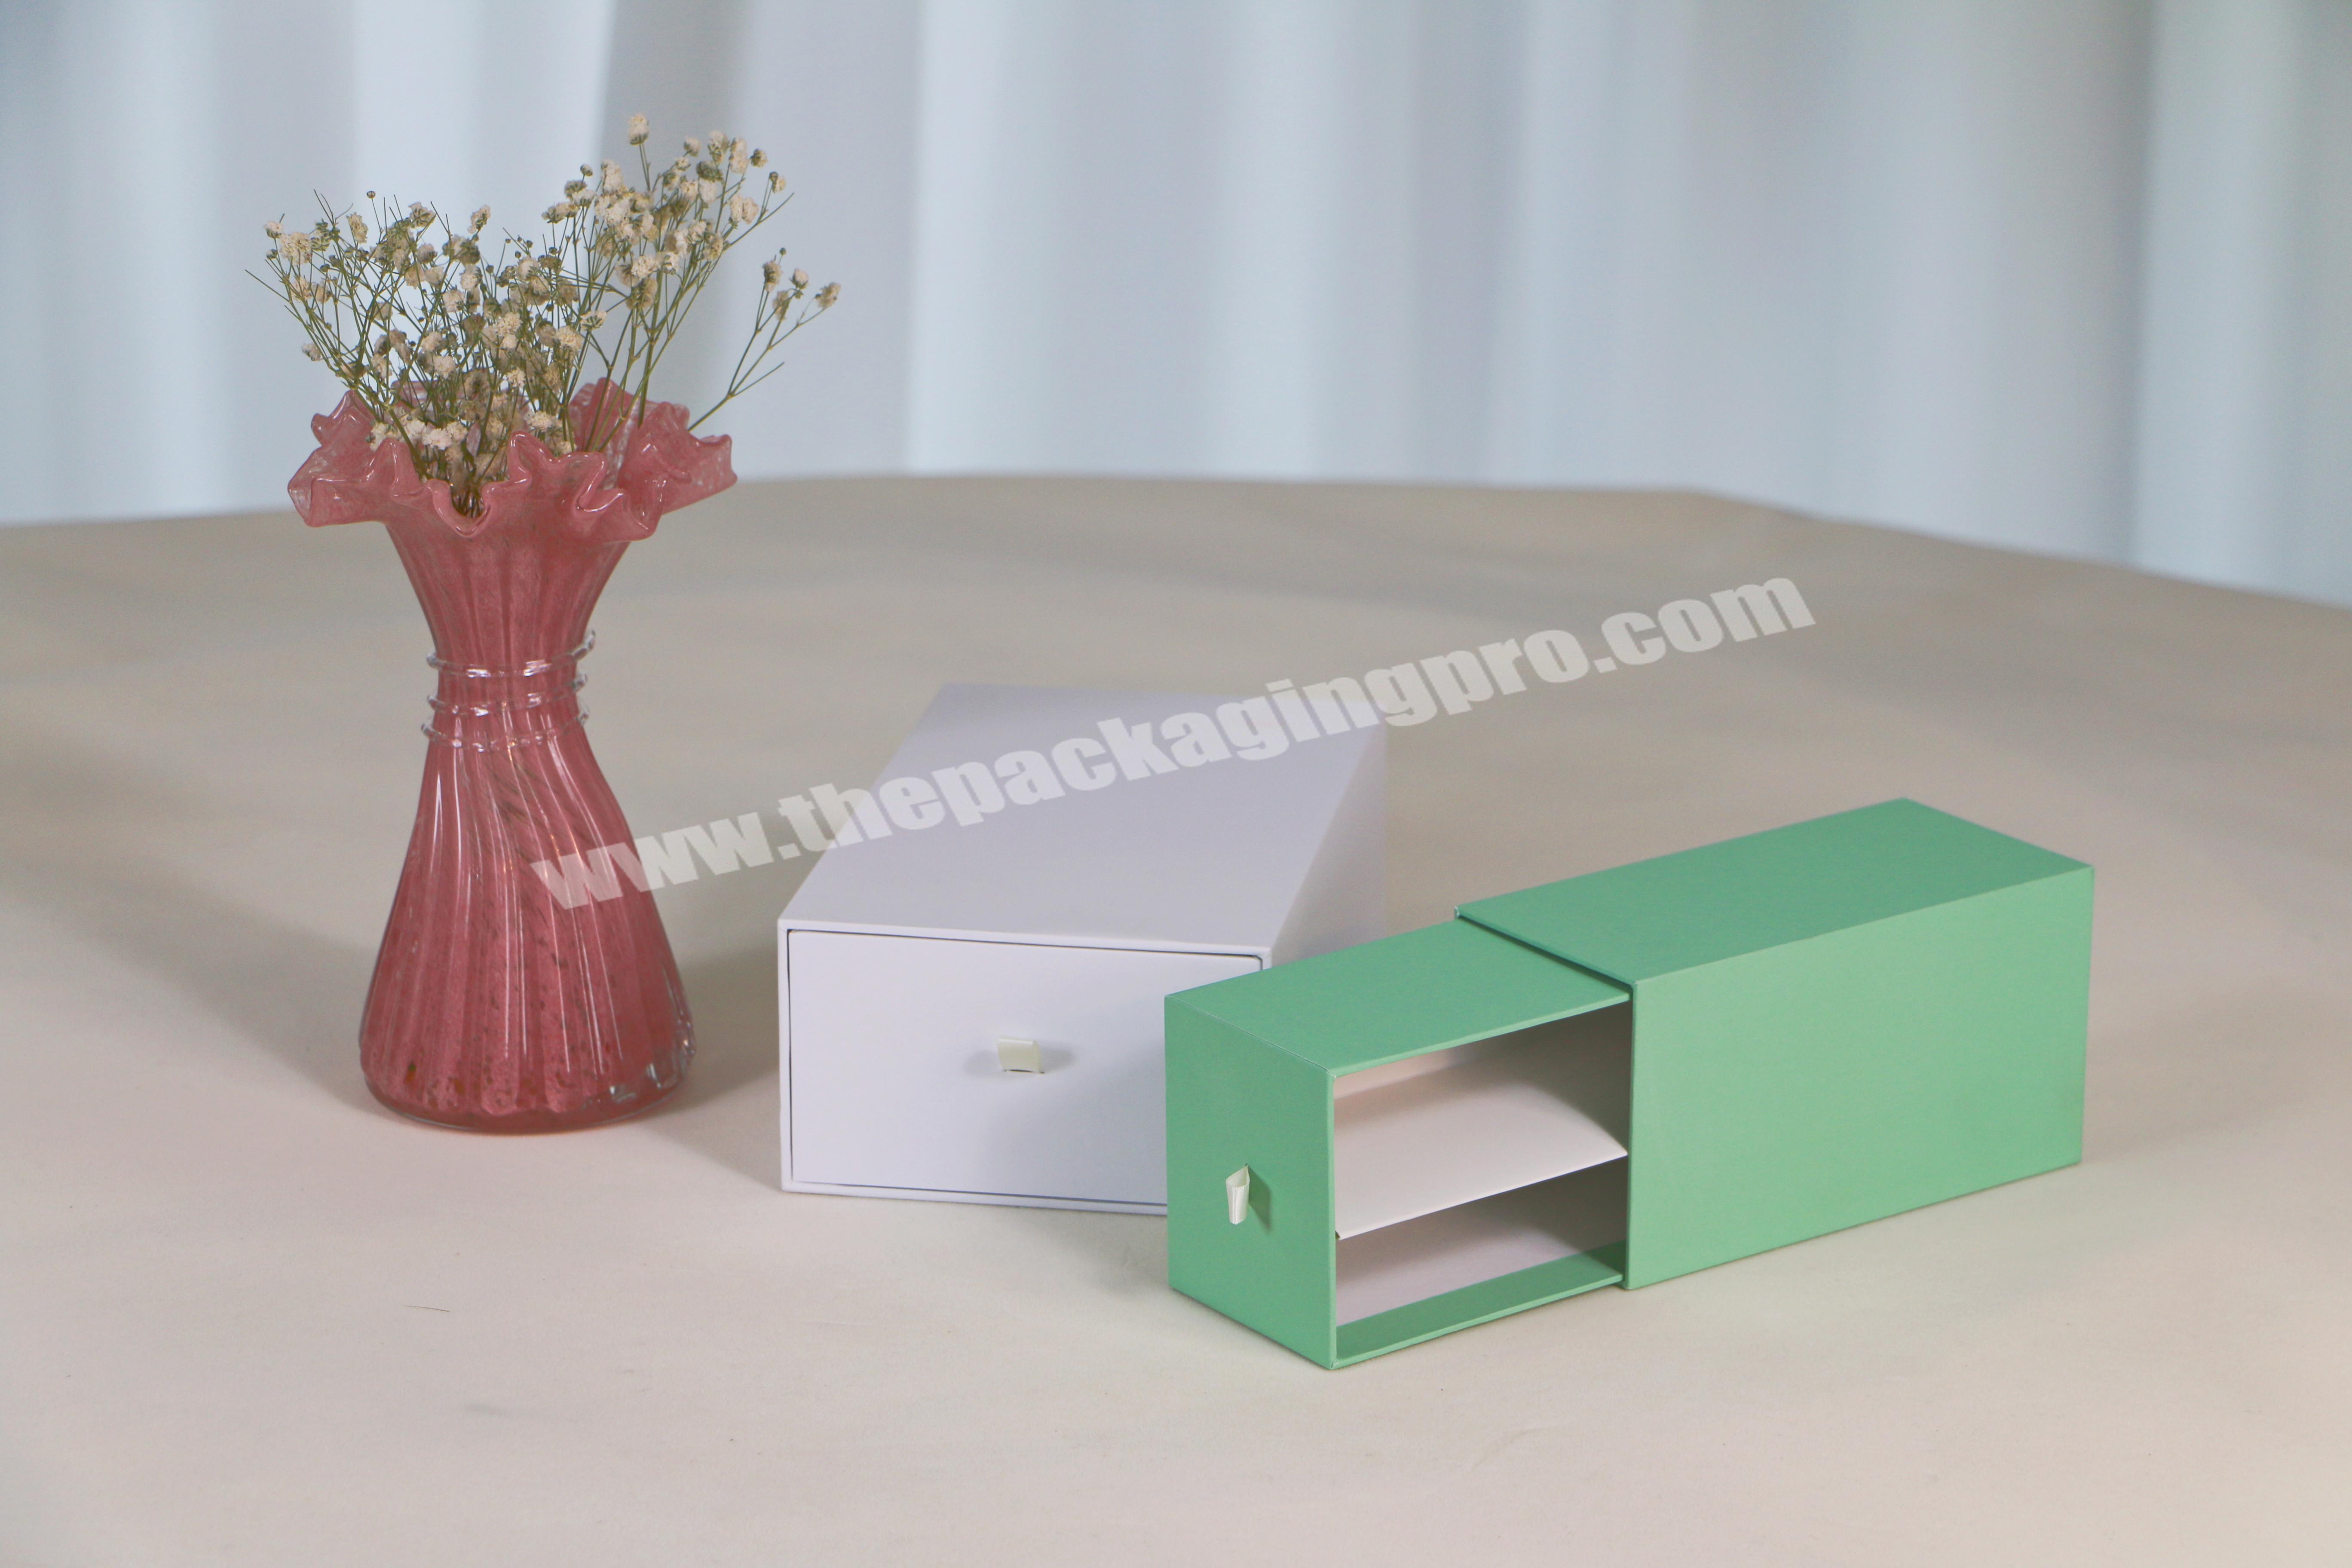 Custom Design Paper Cardboard Scarf Socks Underwear Drawer Gift Box Packaging Wholesale